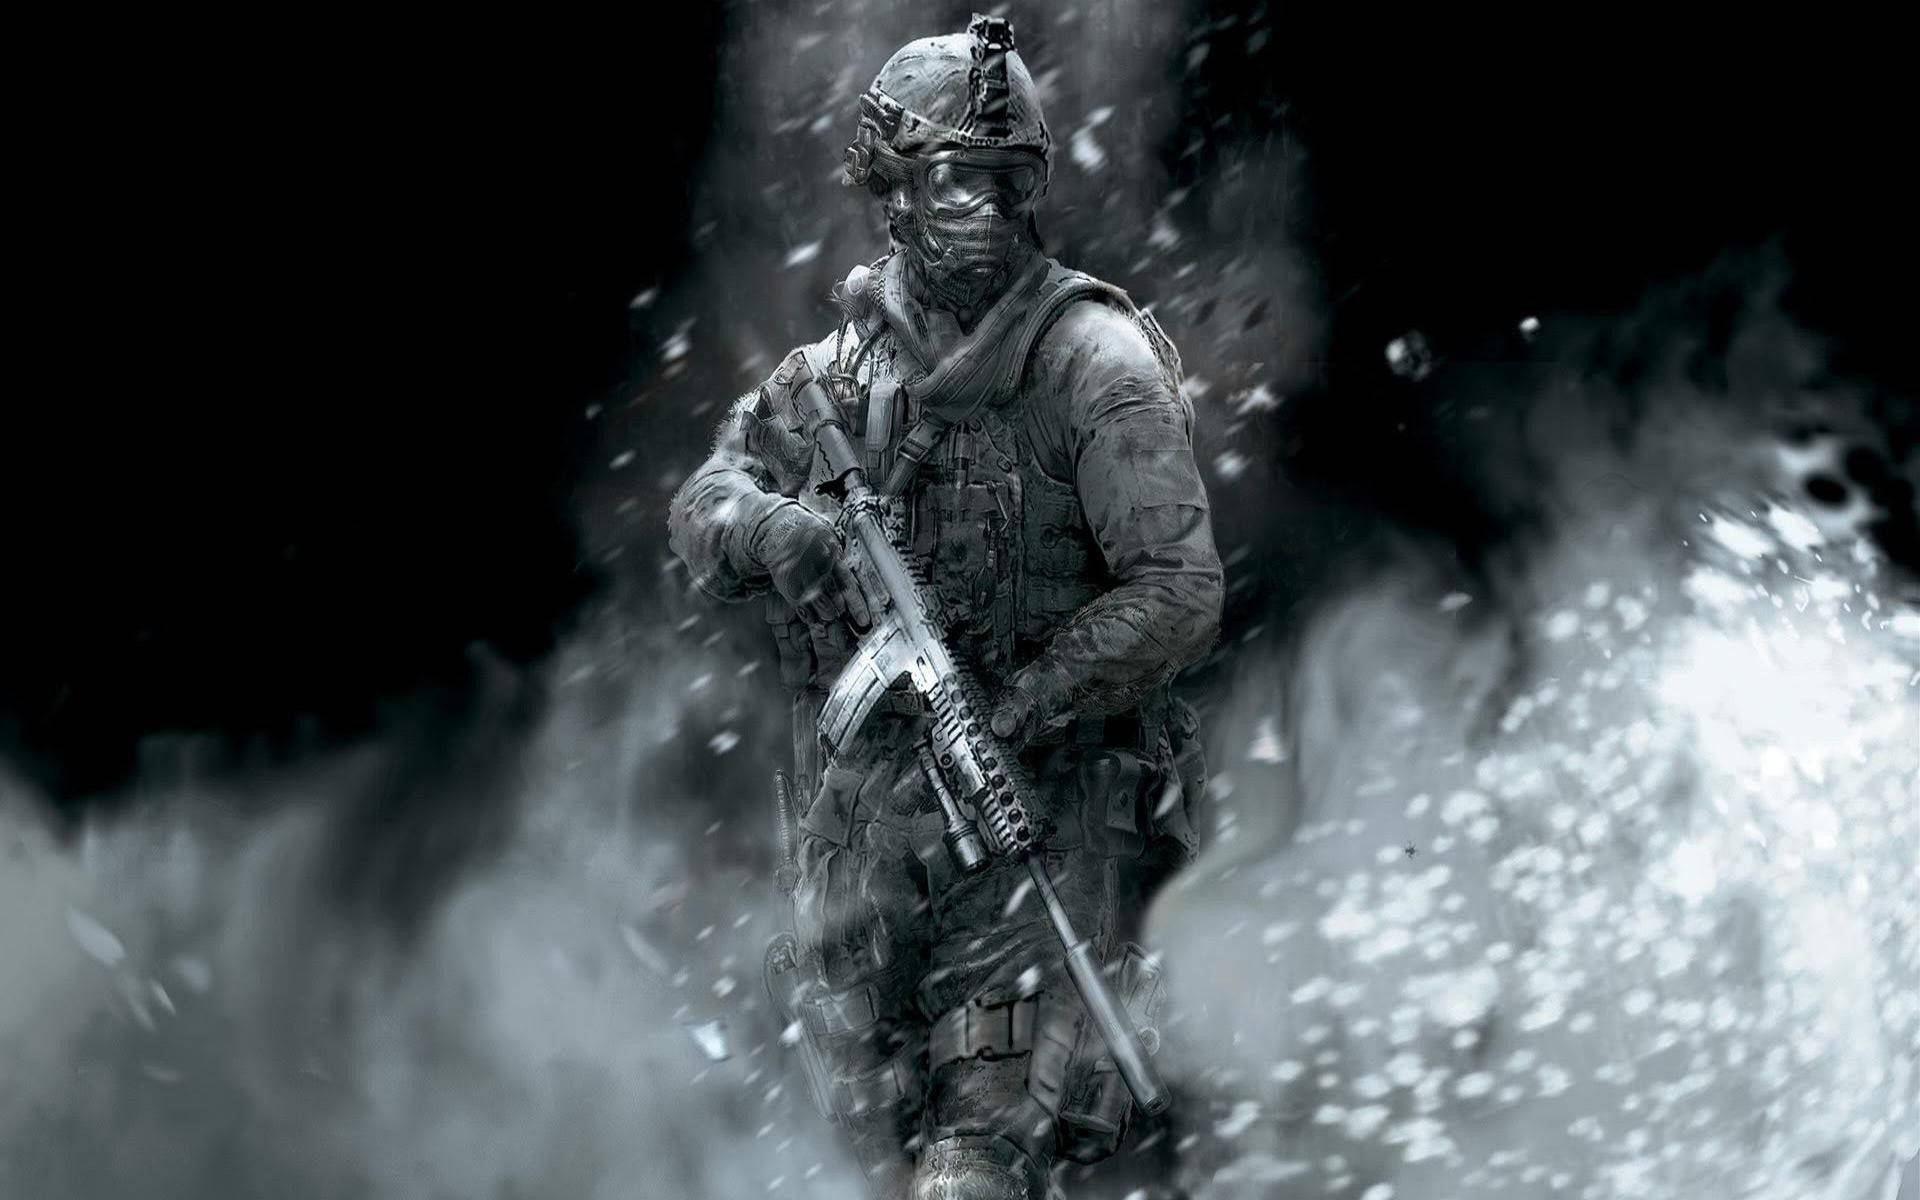 Intense Battlefield Action in Call of Duty Modern Warfare Wallpaper